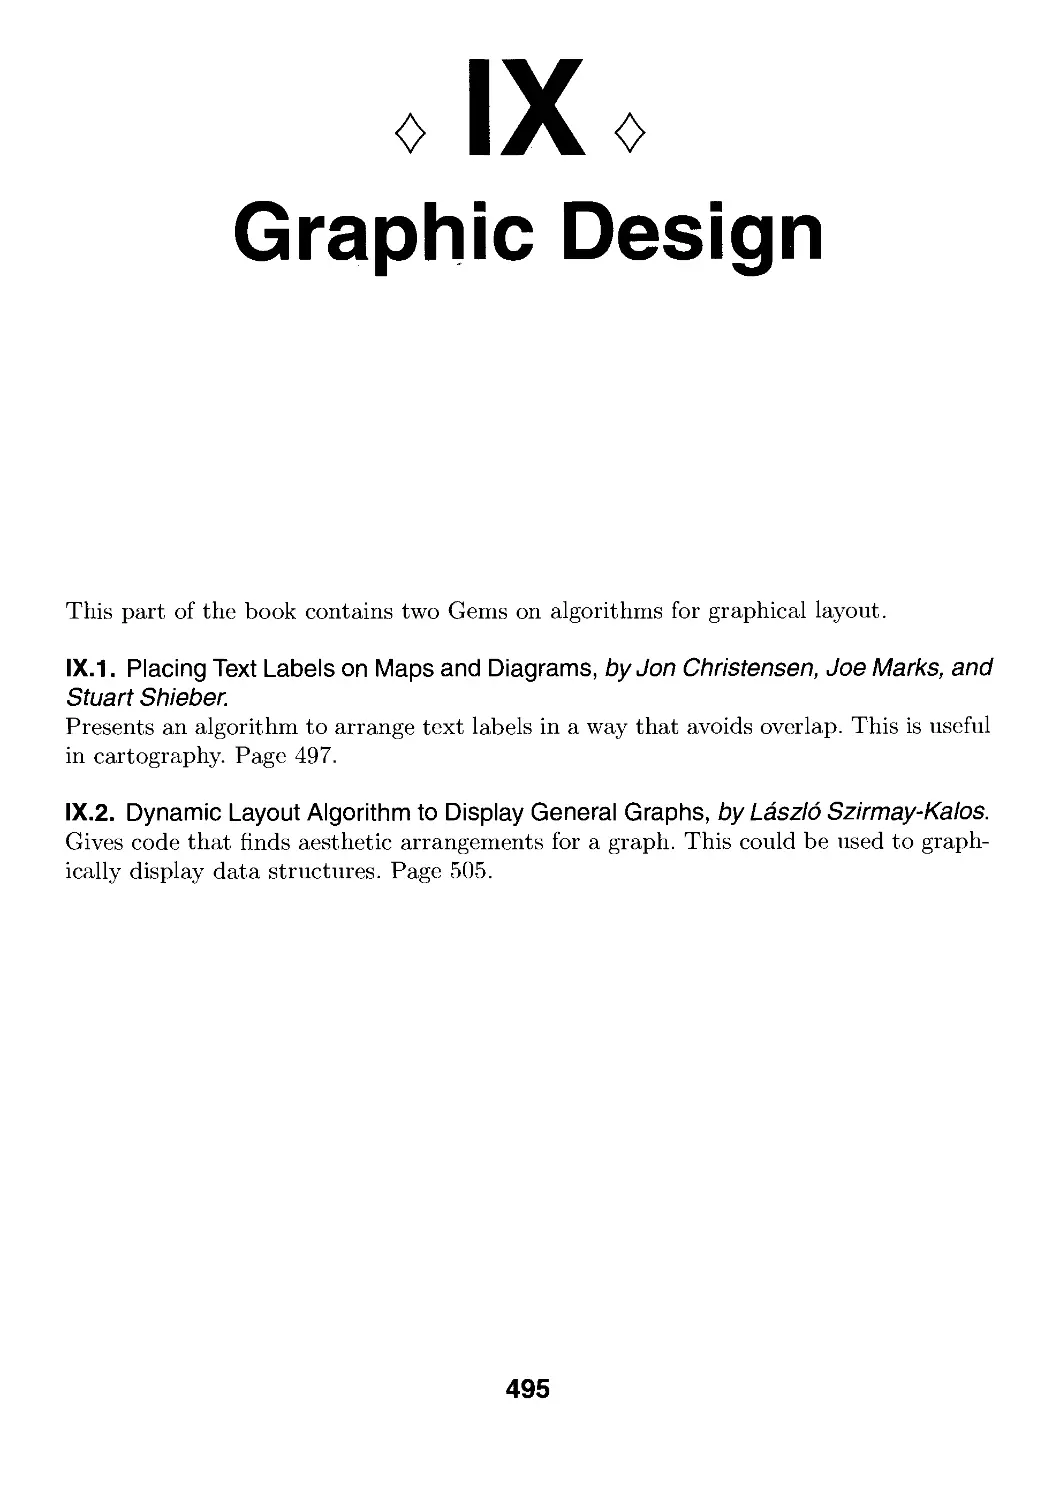 IX. Graphic Design